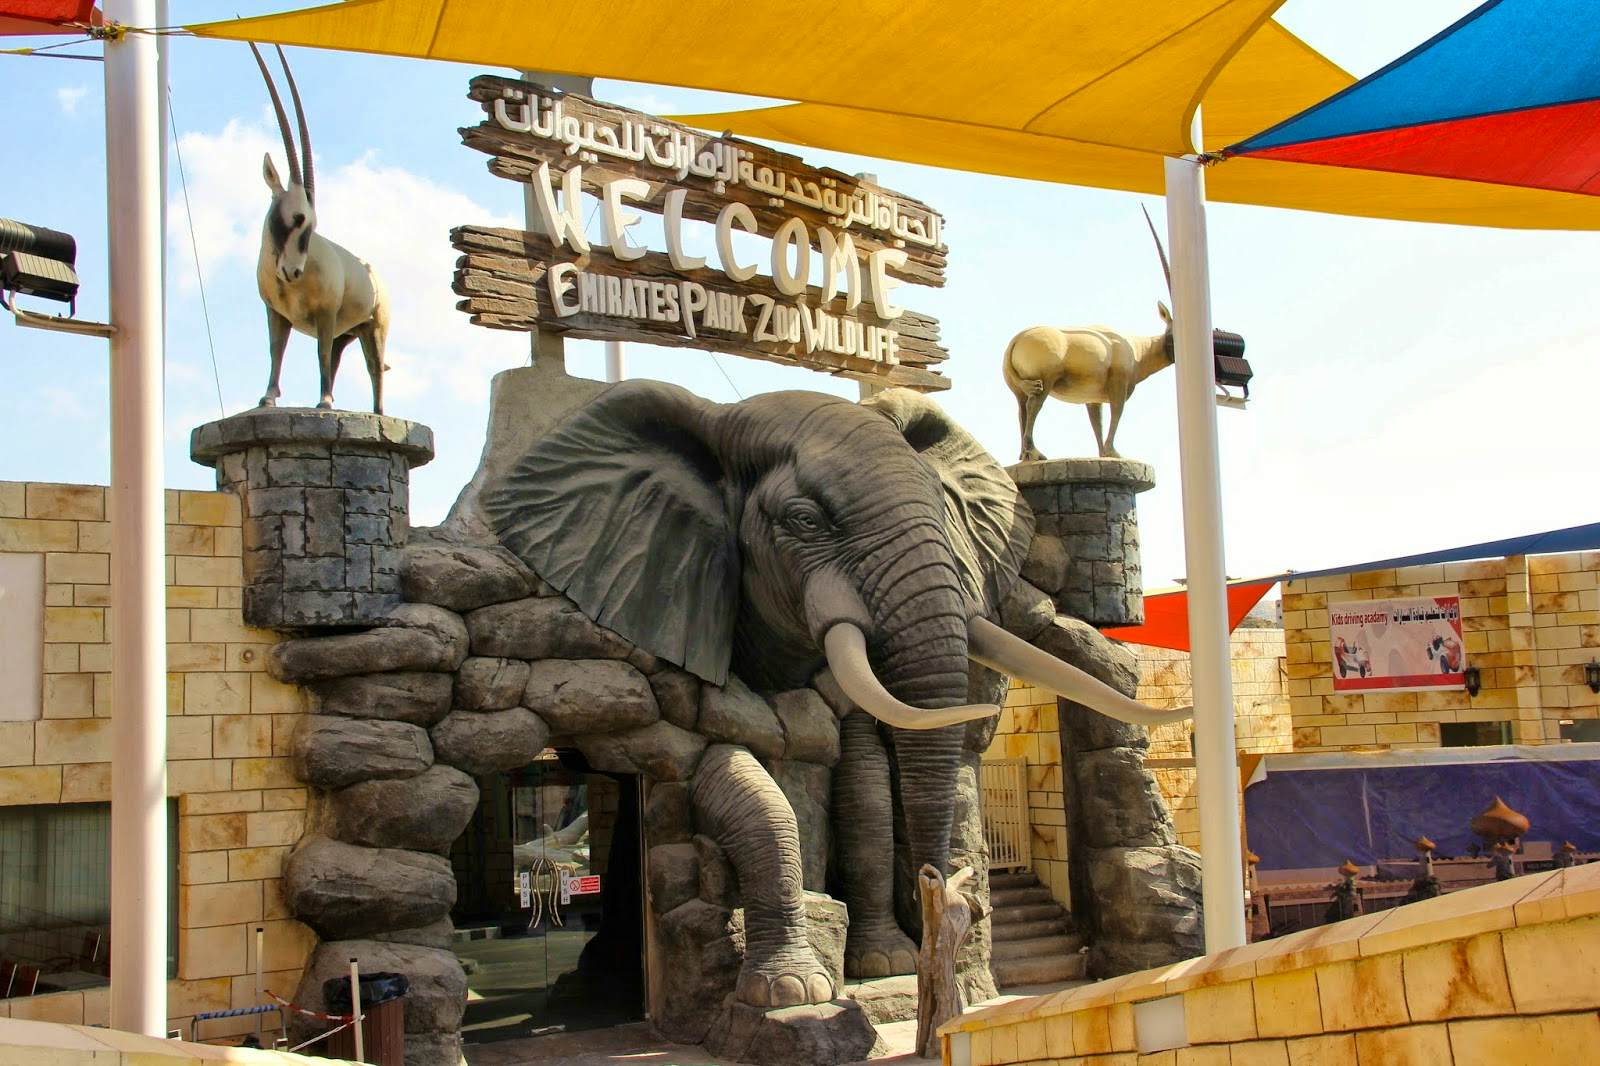 Emirates Park Zoo Tour